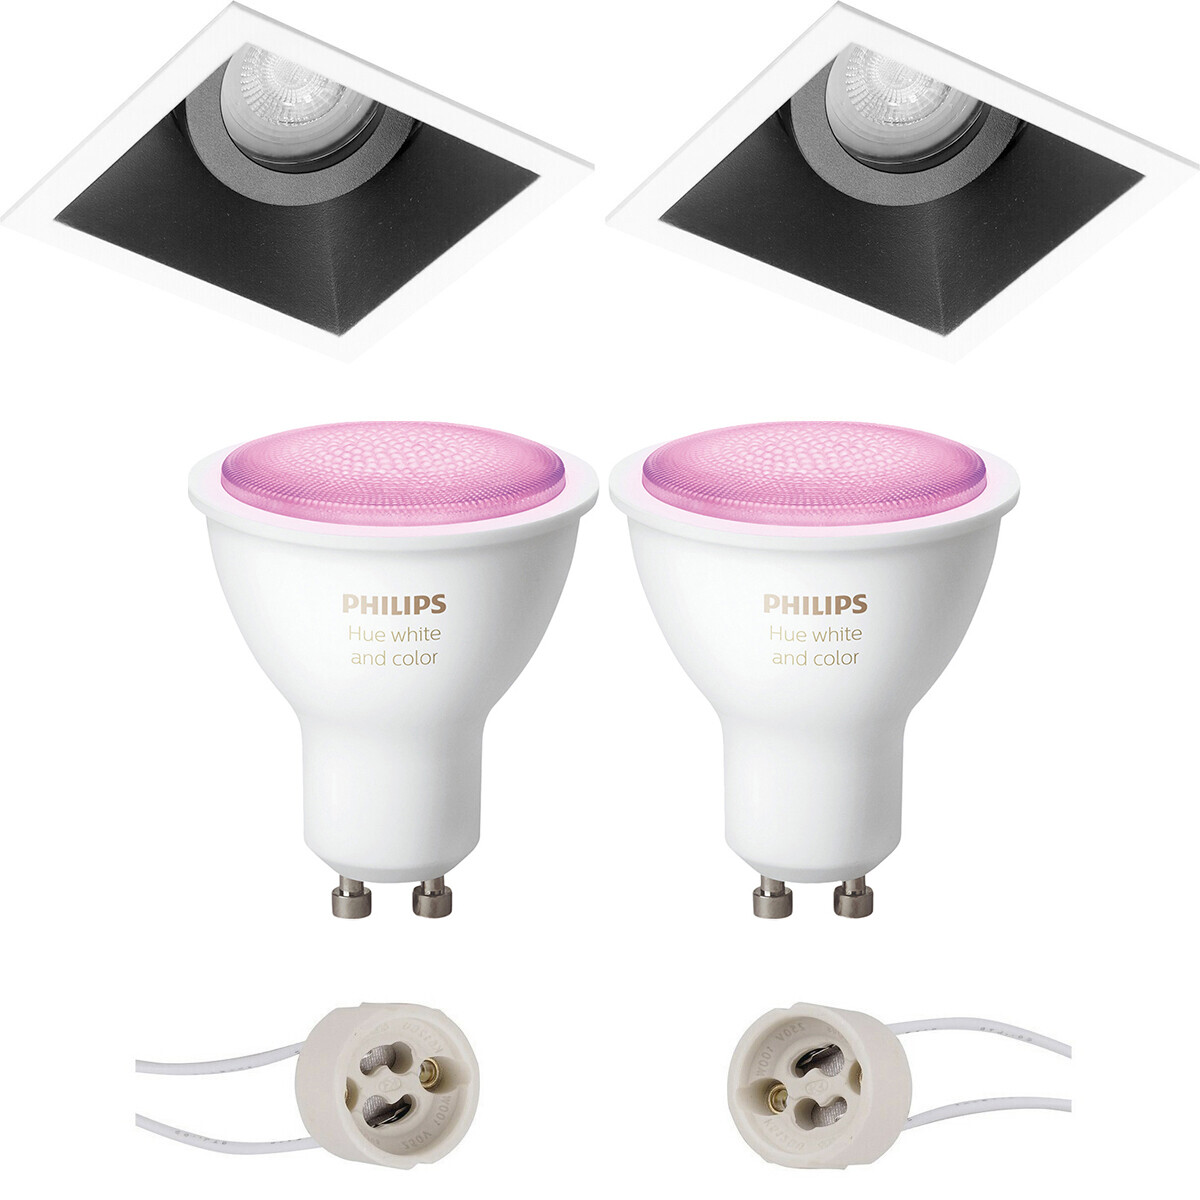 Pragmi Zano Pro Inbouw Vierkant Mat Zwart-Wit Kantelbaar 93mm Philips Hue LED Spot Set GU10 White an